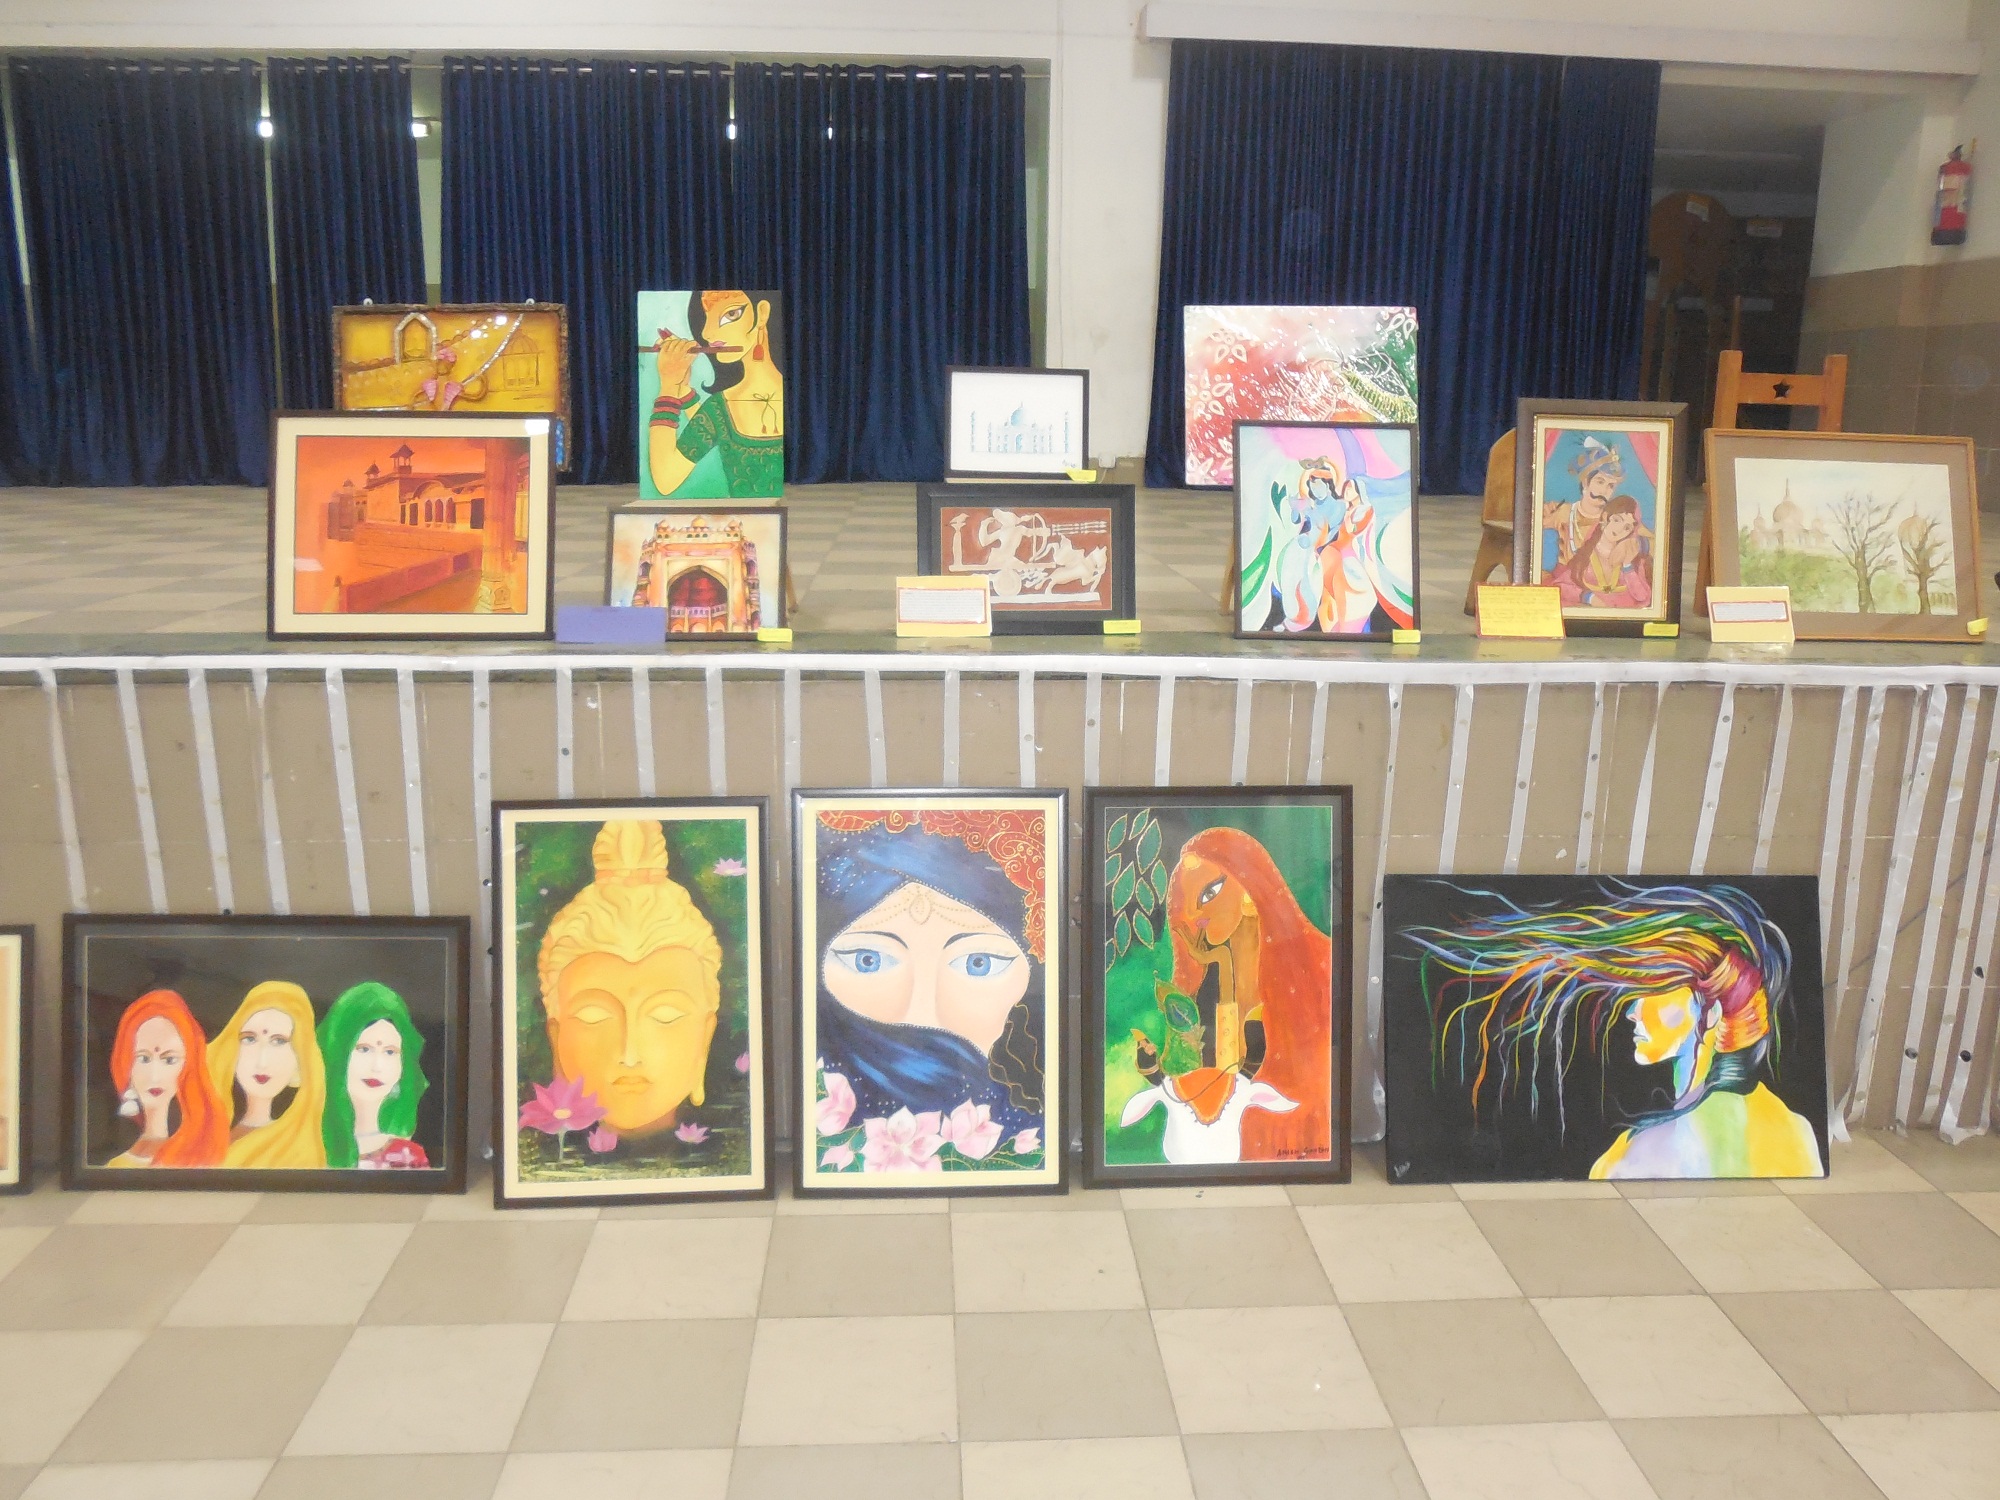 Visual Arts Exhibition